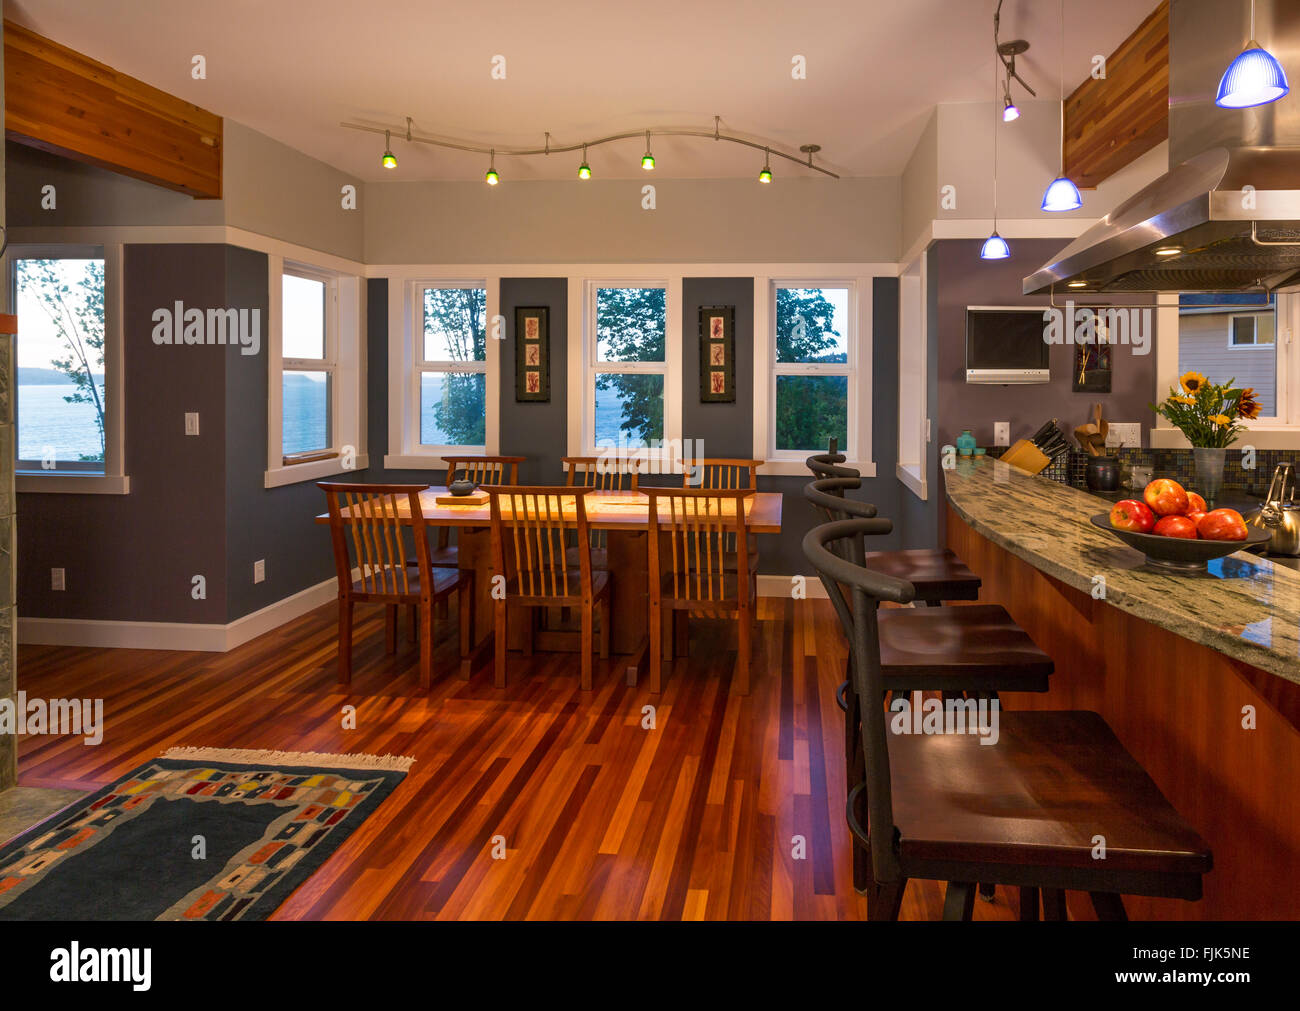 Plan Benutzerdefinierte Küche Frühstück Bar- und Essbereich in der zeitgenössischen upscale Home Interior mit Holzböden, Windows- und Akzentbeleuchtung Stockfoto